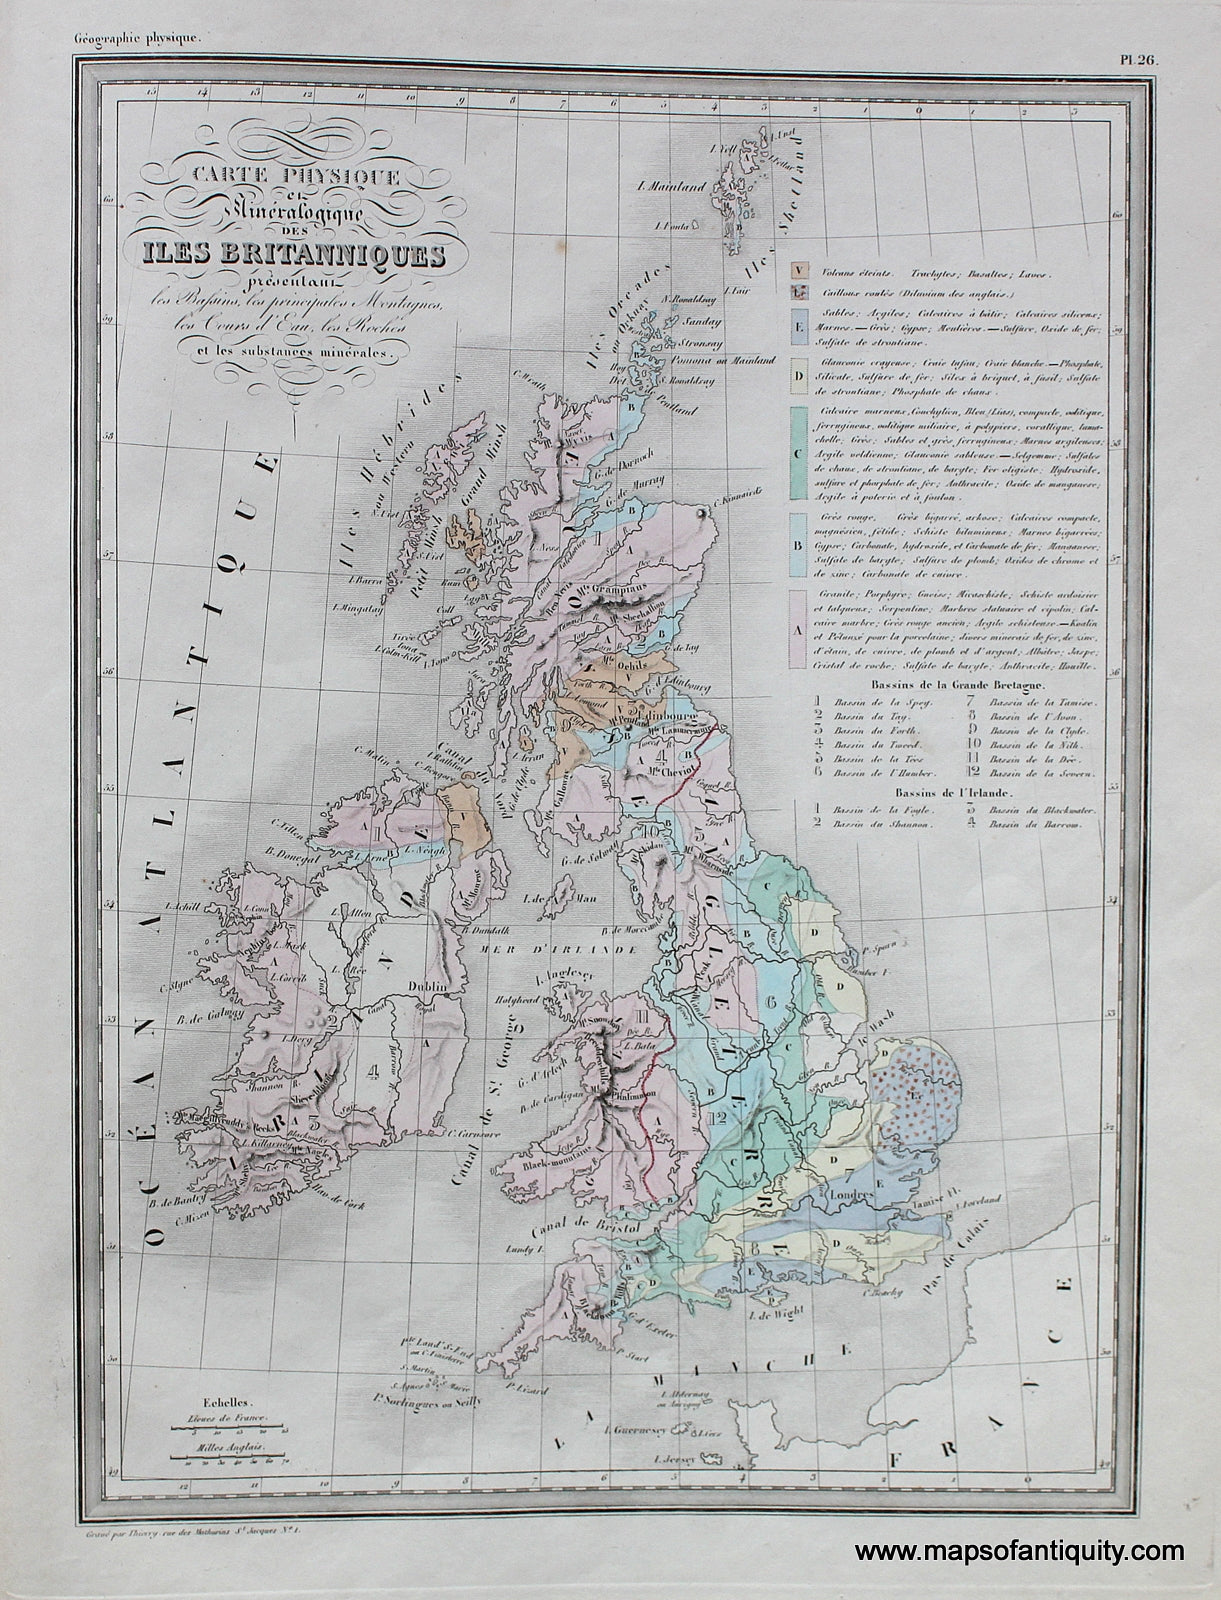 Antique-Hand-Colored-Map-Carte-Physique-et-Mineralogique-des-Iles-Britanniques.--**********-Great-Britain--1842-Malte-Brun-Maps-Of-Antiquity